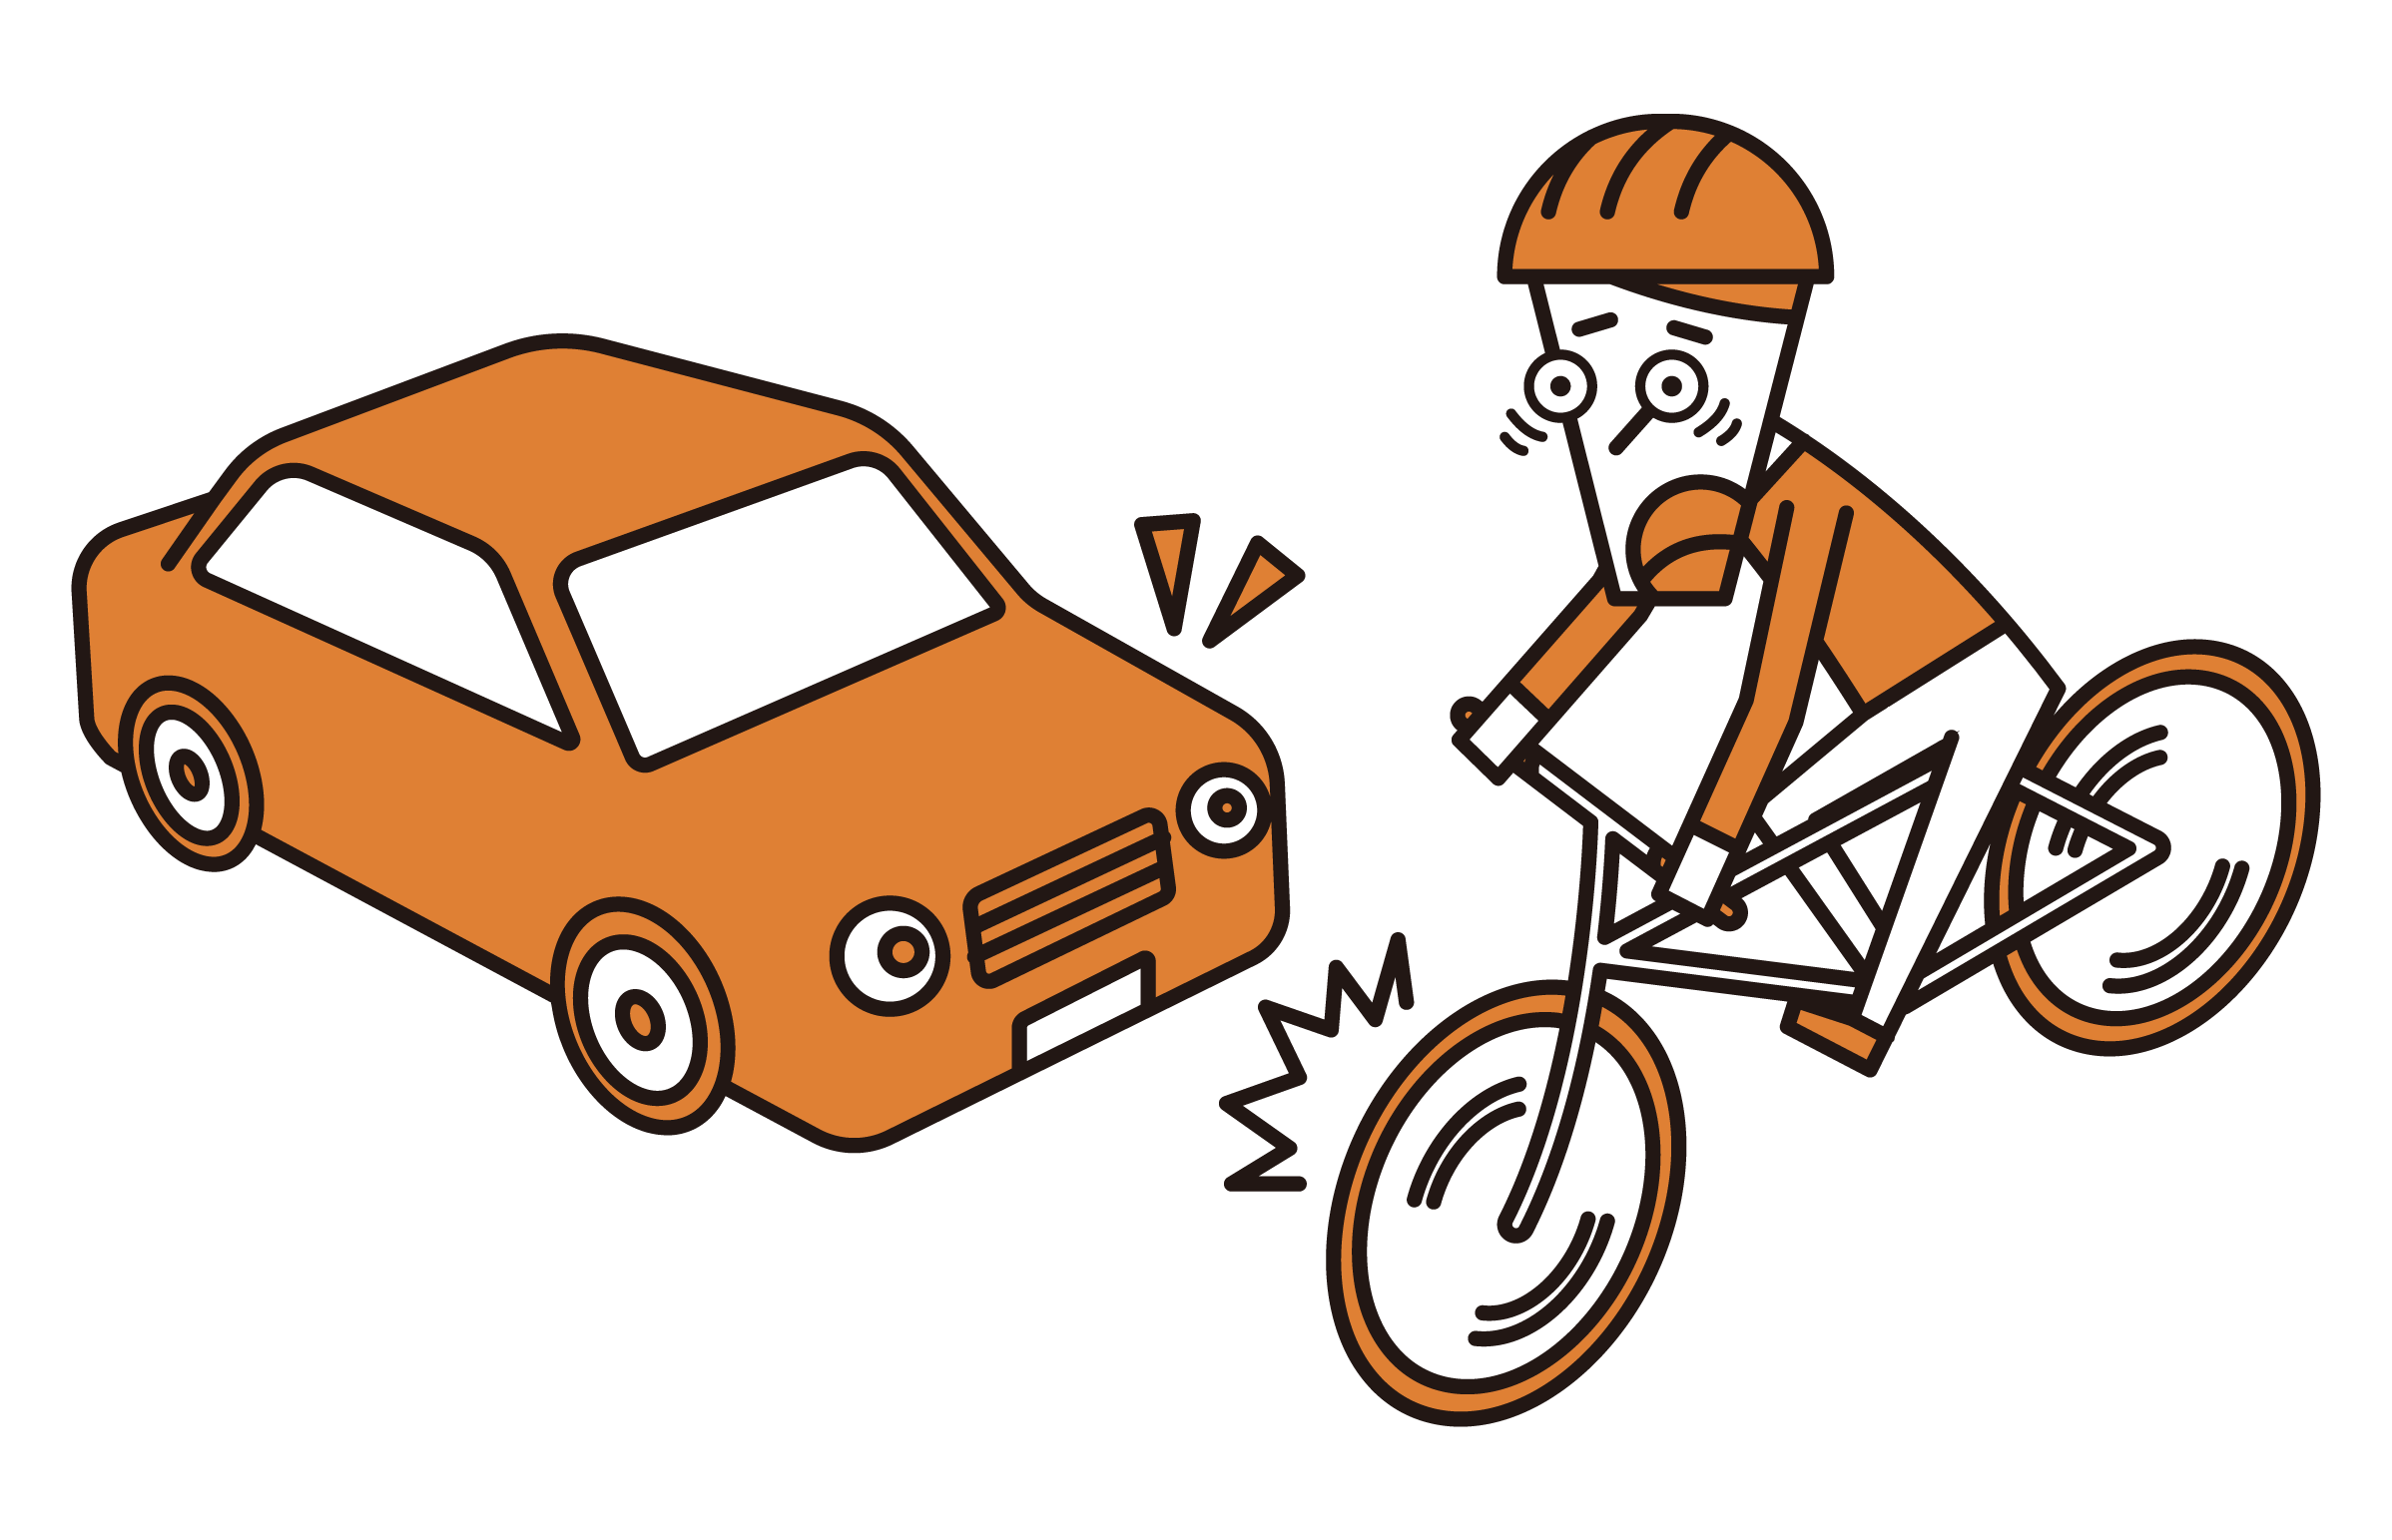 자동차와 충돌하려고하는 자전거 (남성)의 그림